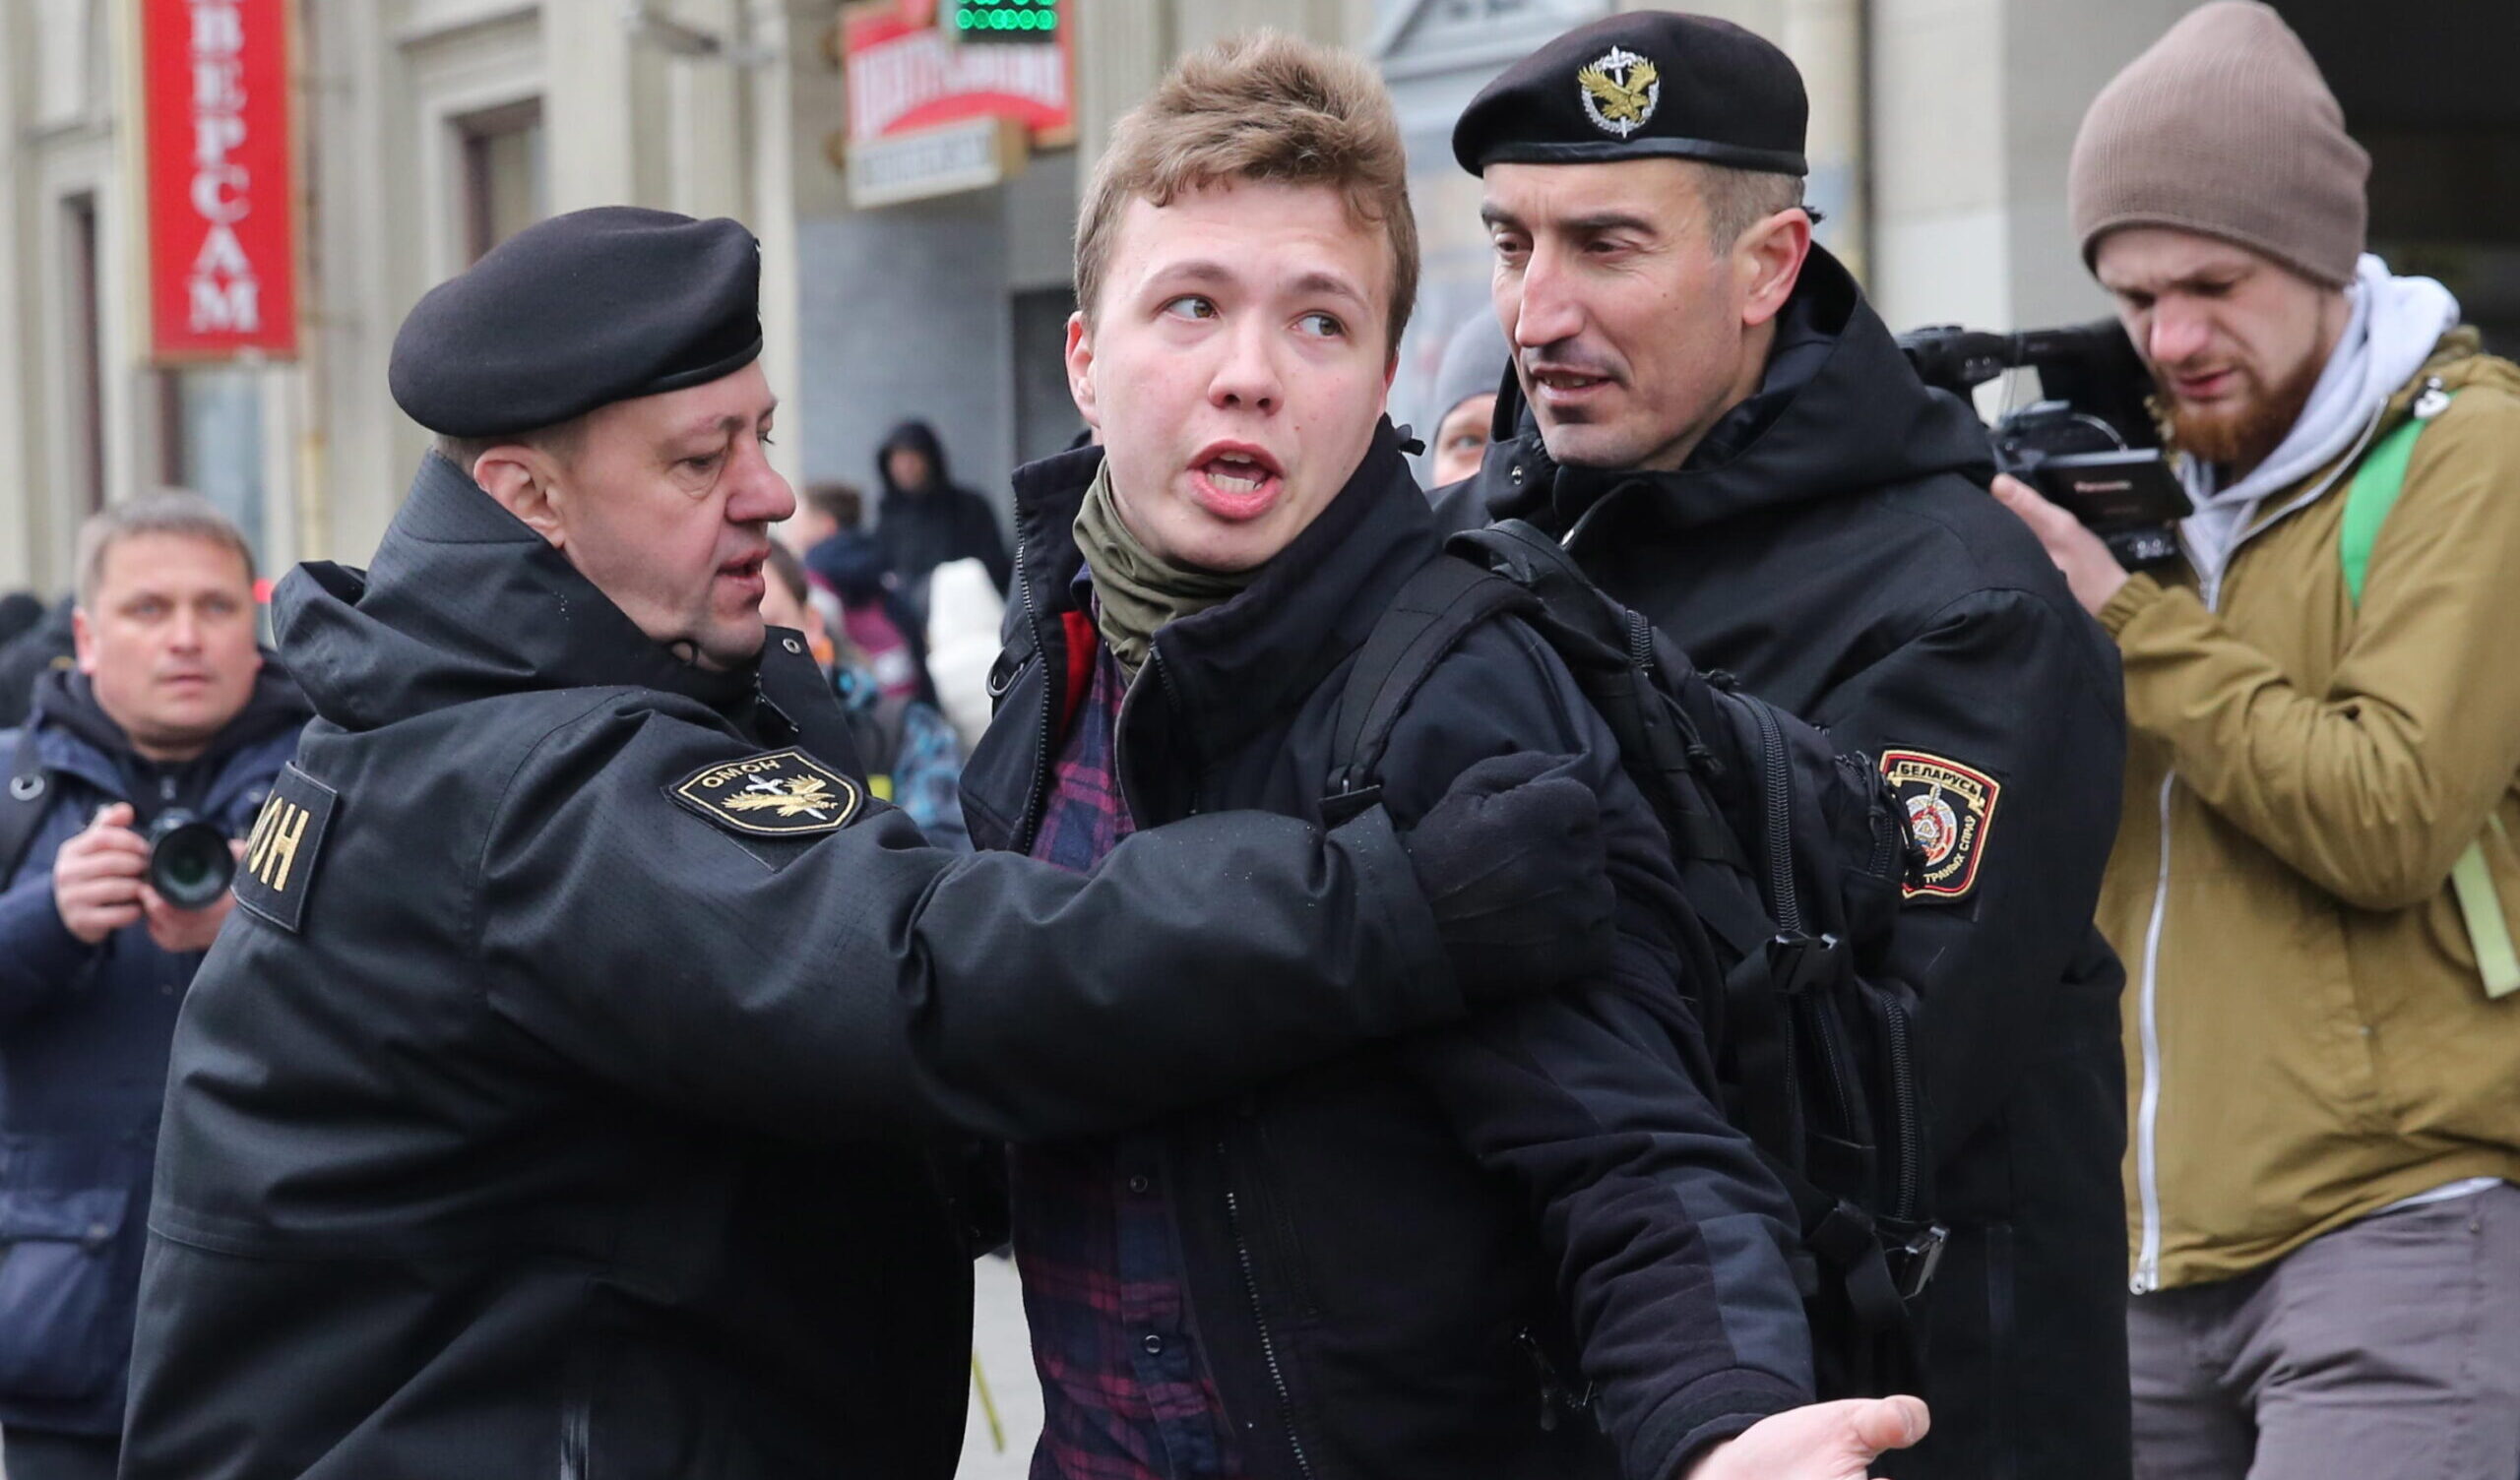 Bielorussia, graziato il giornalista dissidente Protasevich: era stato condannato a 8 anni